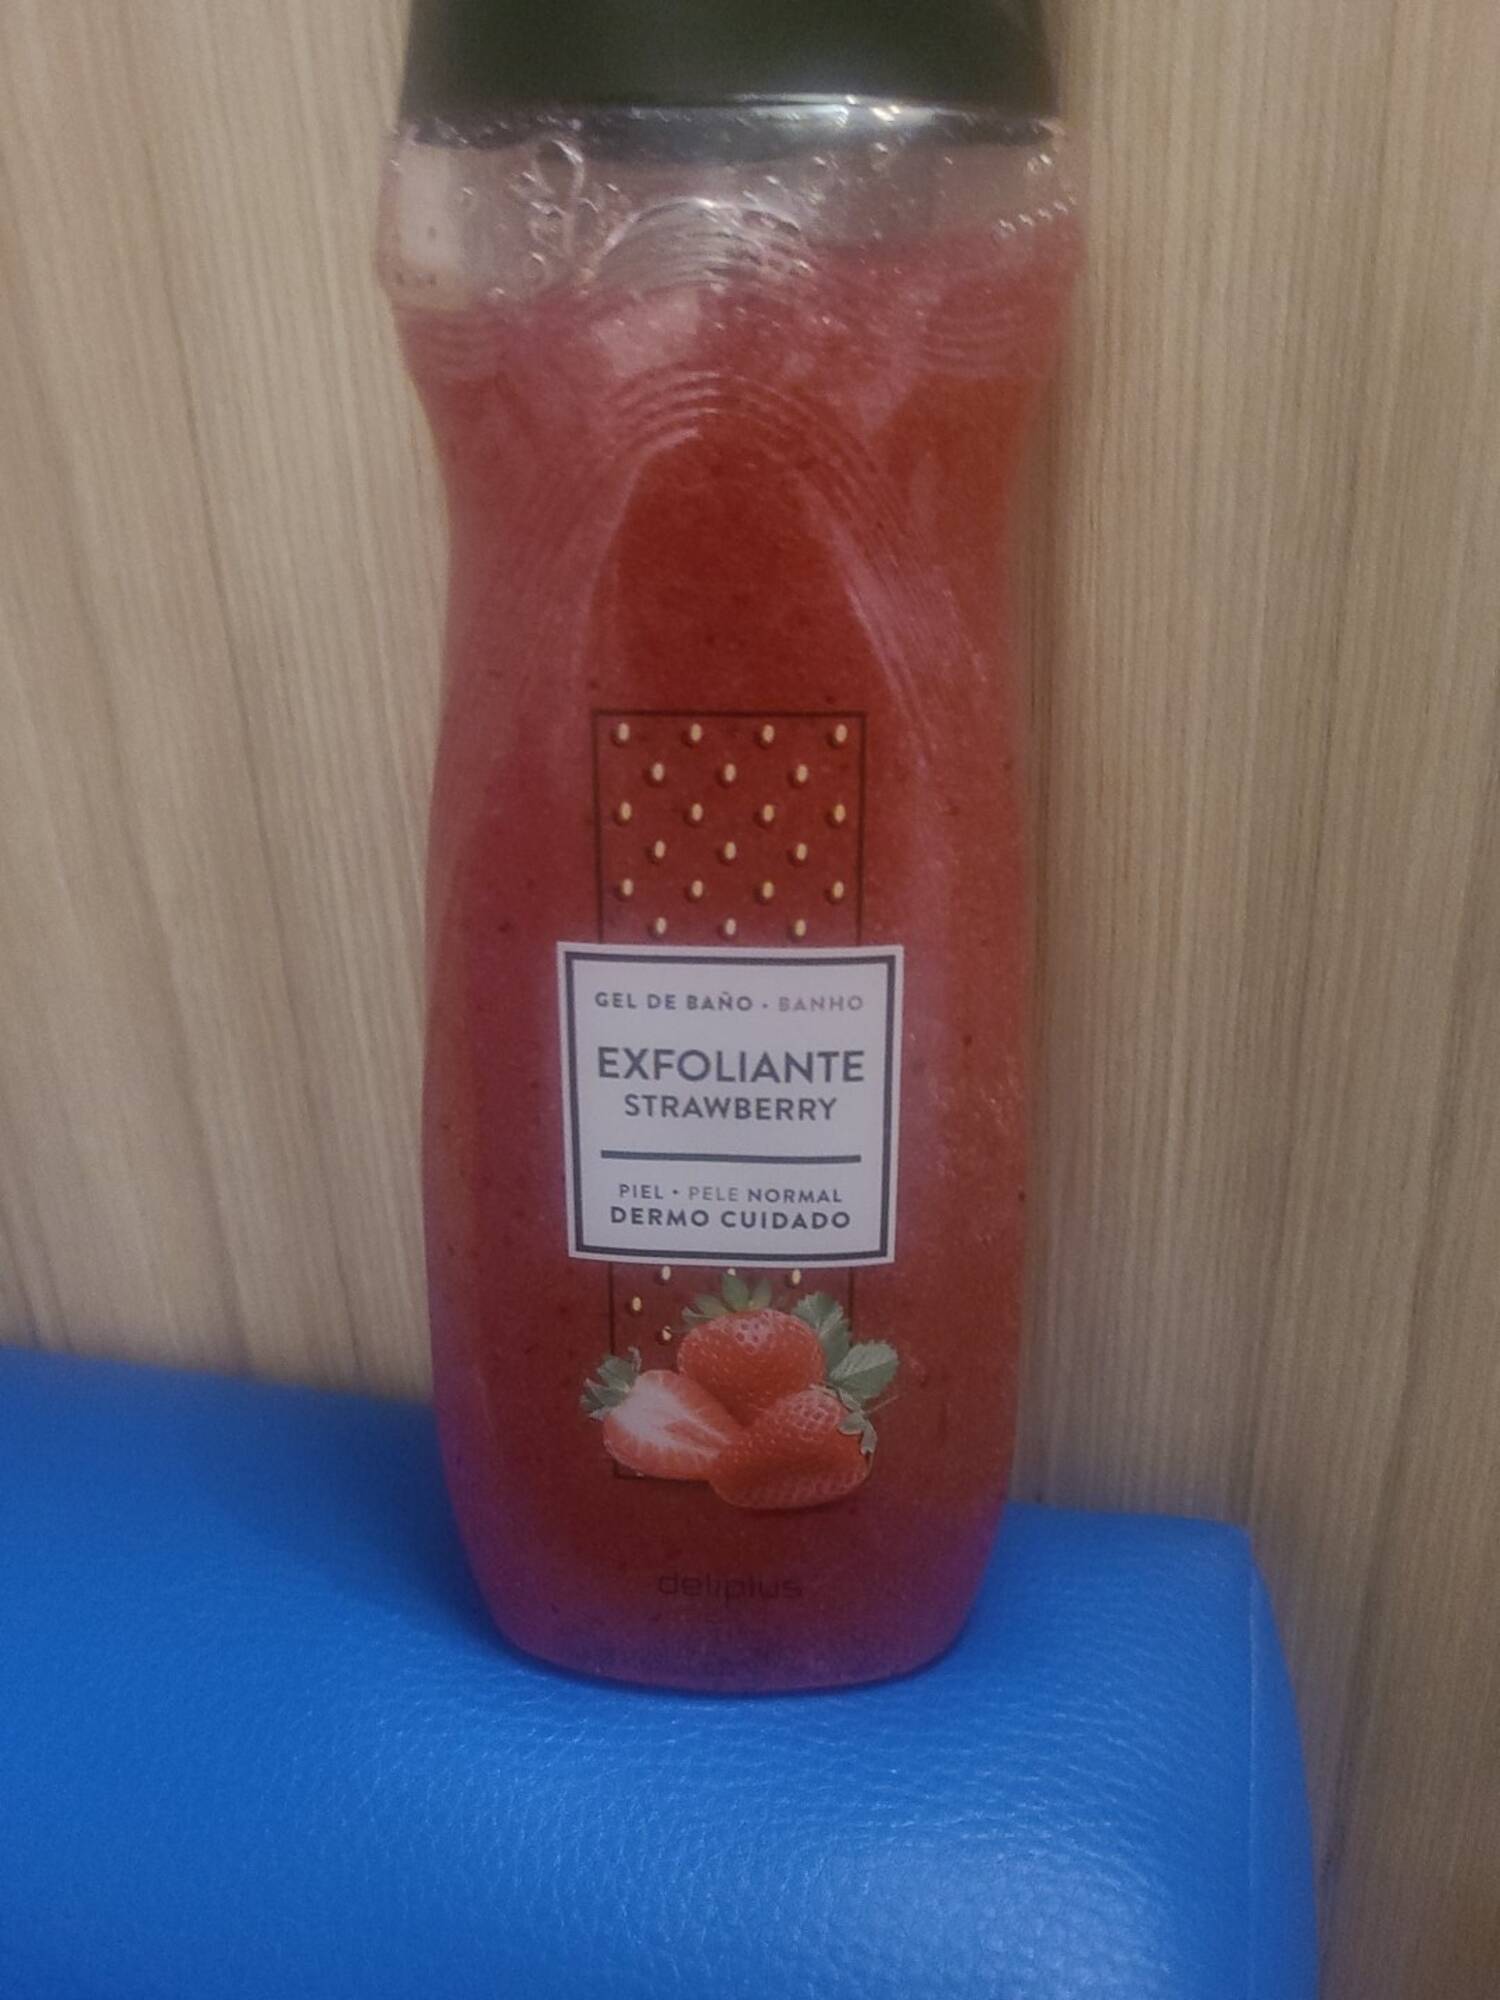 DELIPLUS - Exfoliante strawberry - Gel de baño